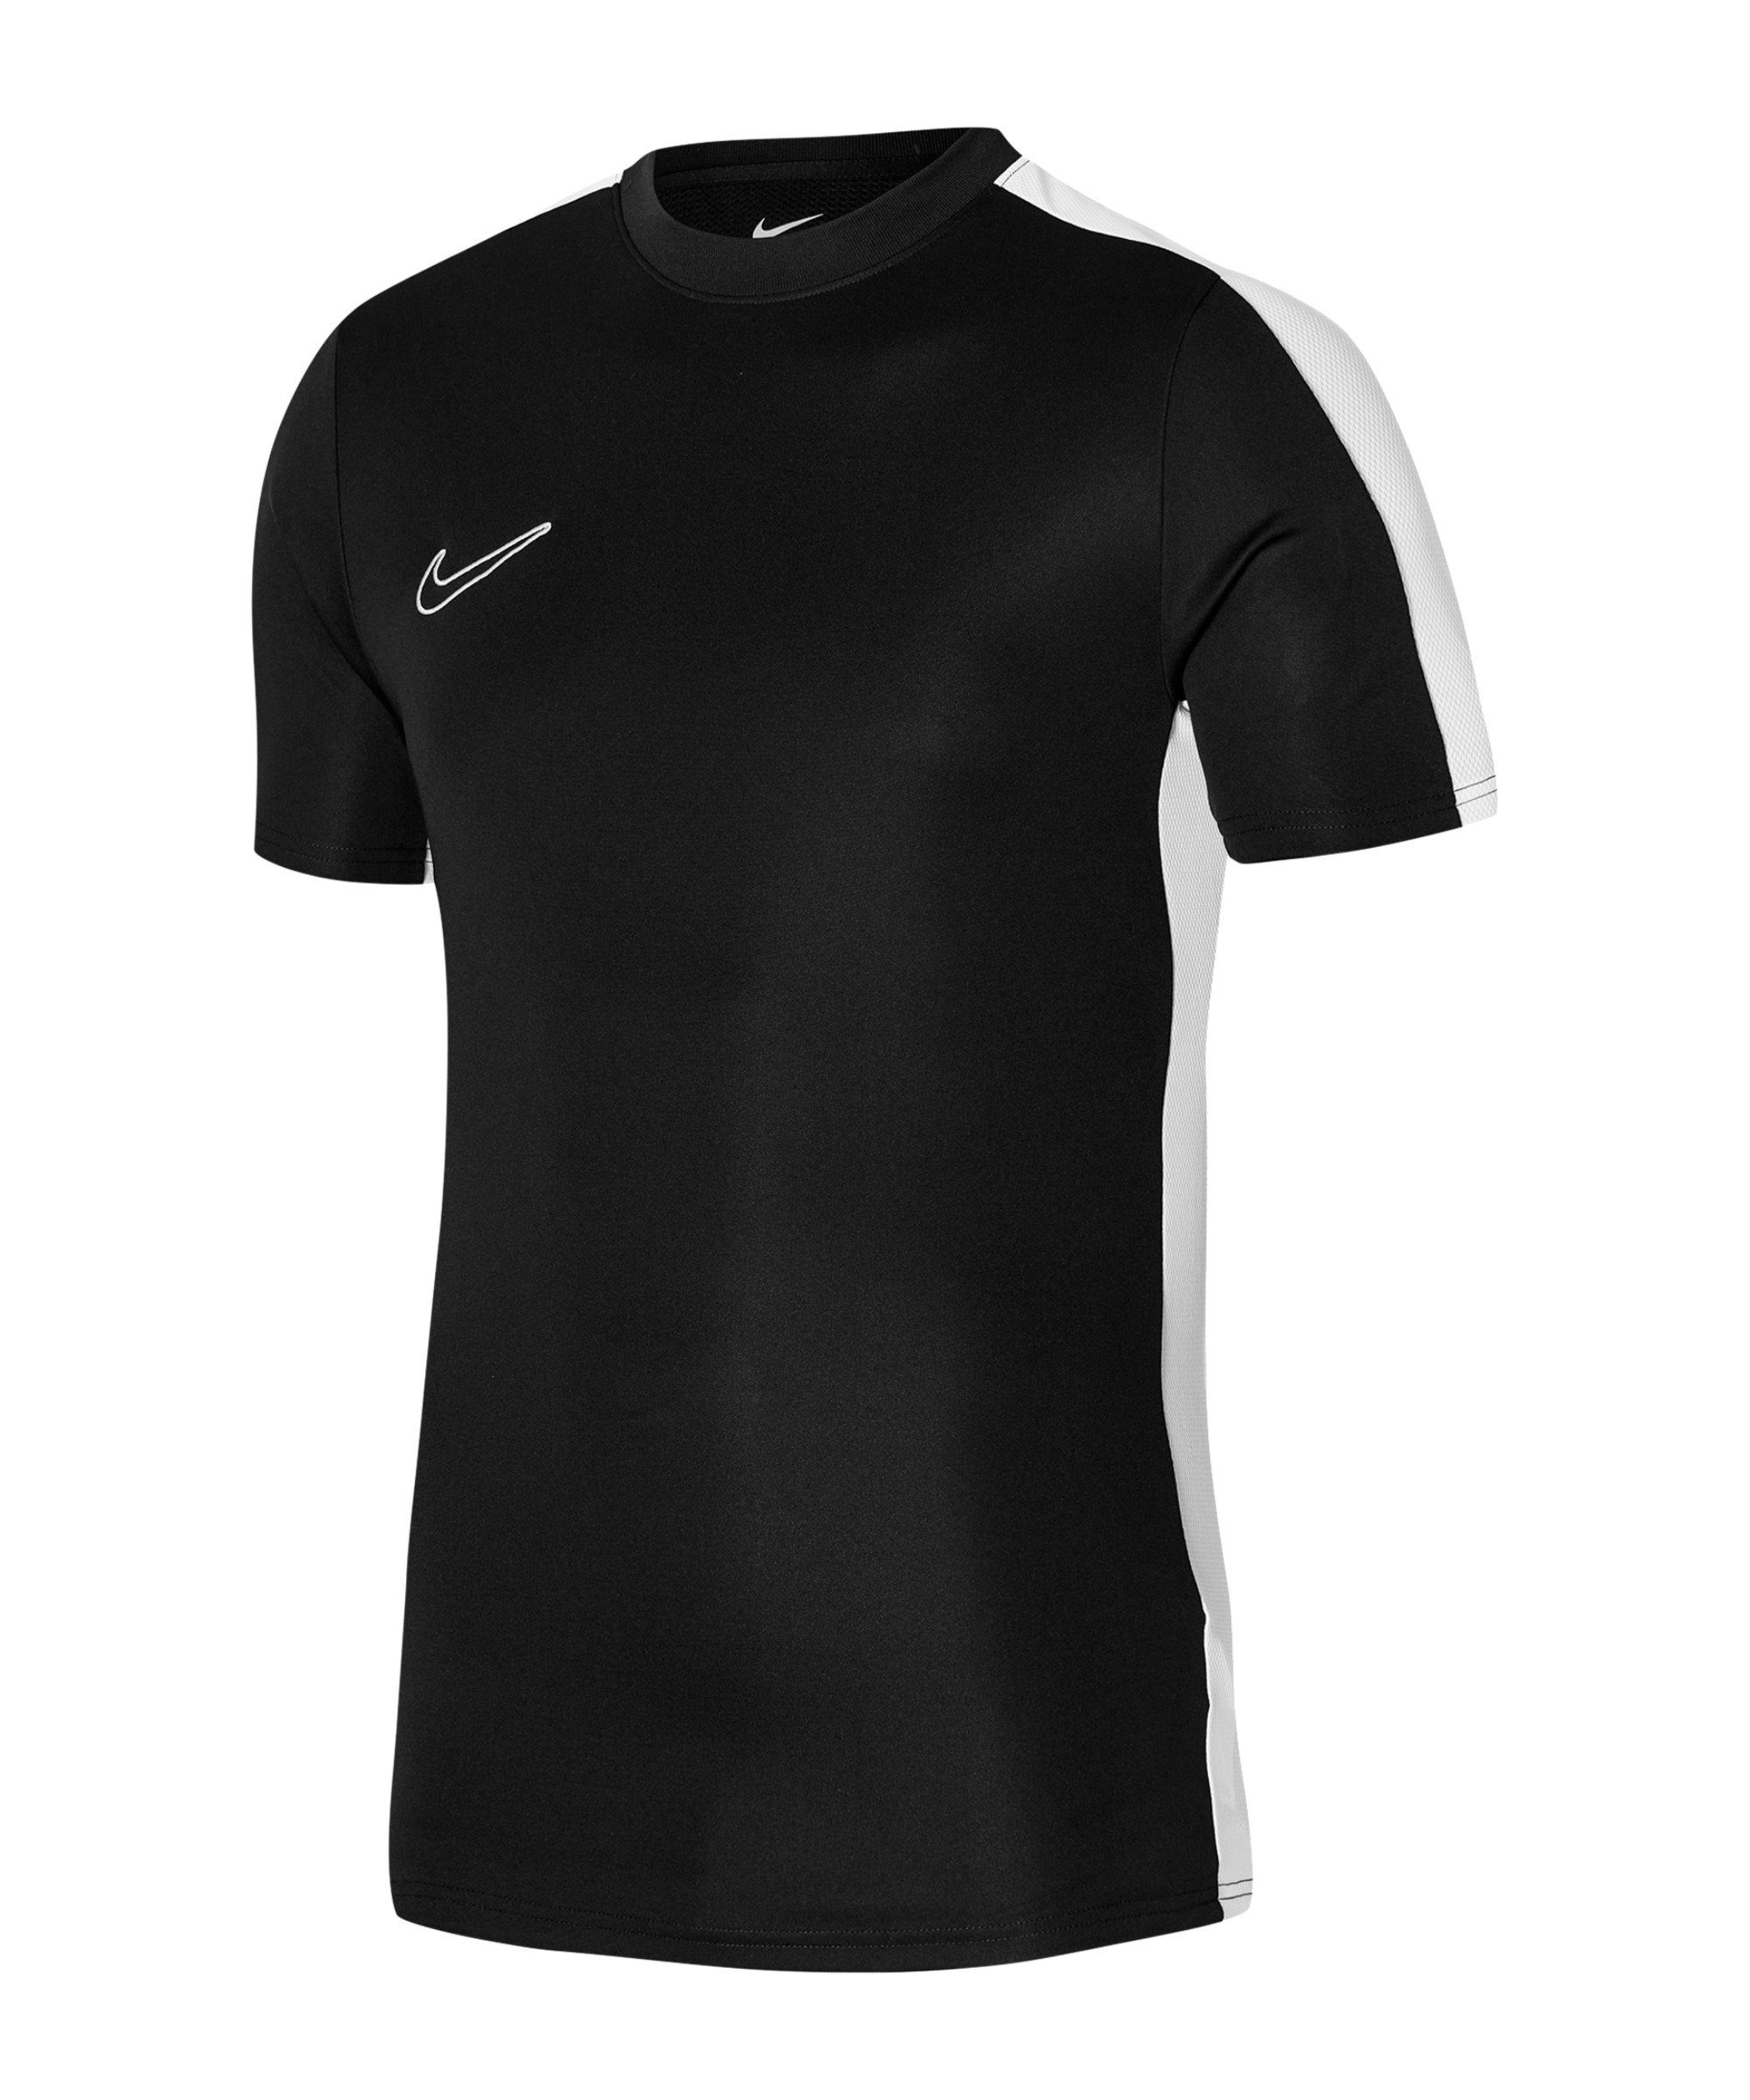 Nike T-Shirt Academy Kids default schwarzweissweiss Trainingsshirt 23